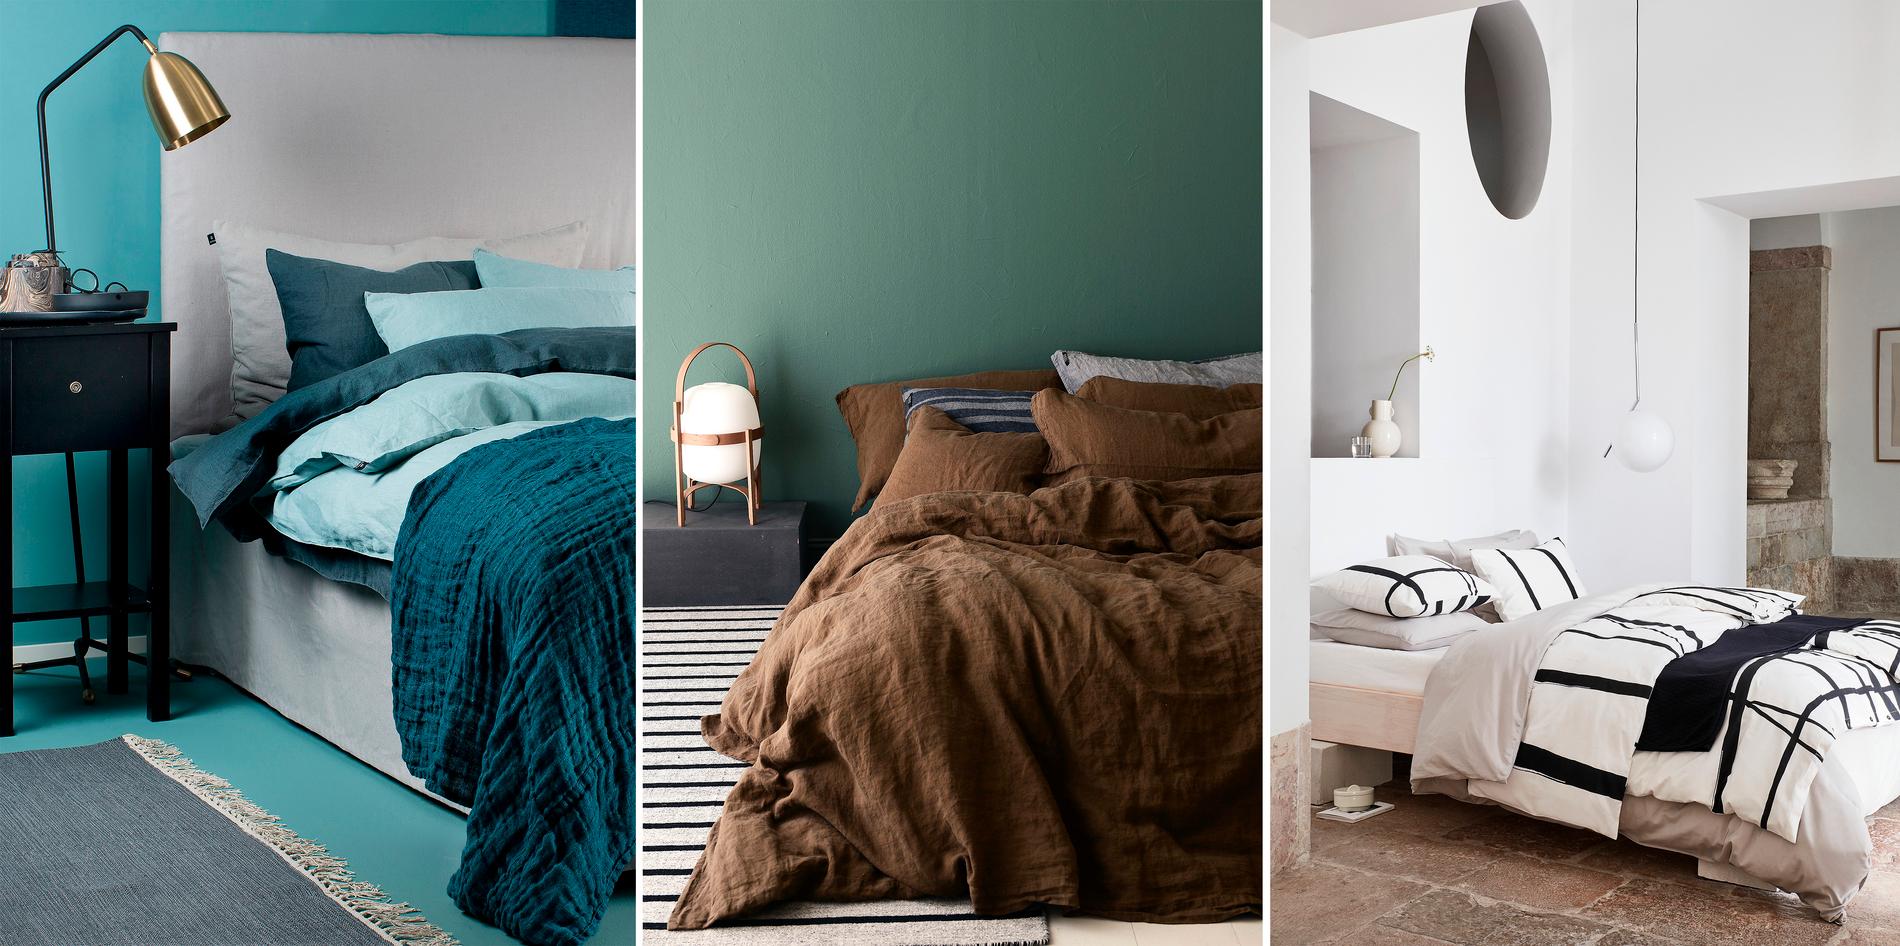 Sköna material, färger och mönster förhöjer den mysiga känslan i ditt sovrum.